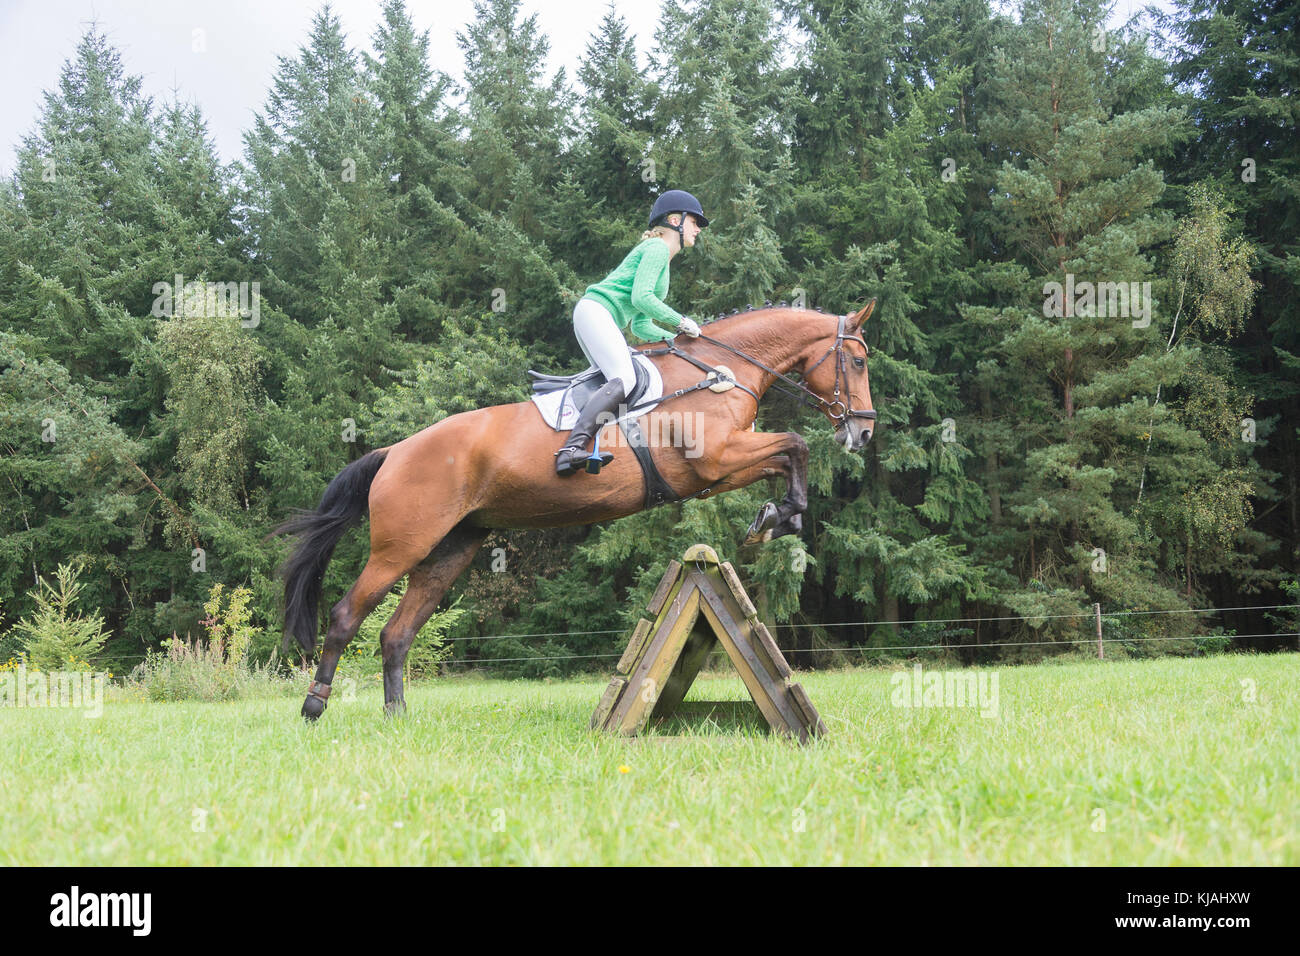 Hanoverian cavallo. Rider superare un ostacolo durante un cross-country ride. Germania Foto Stock